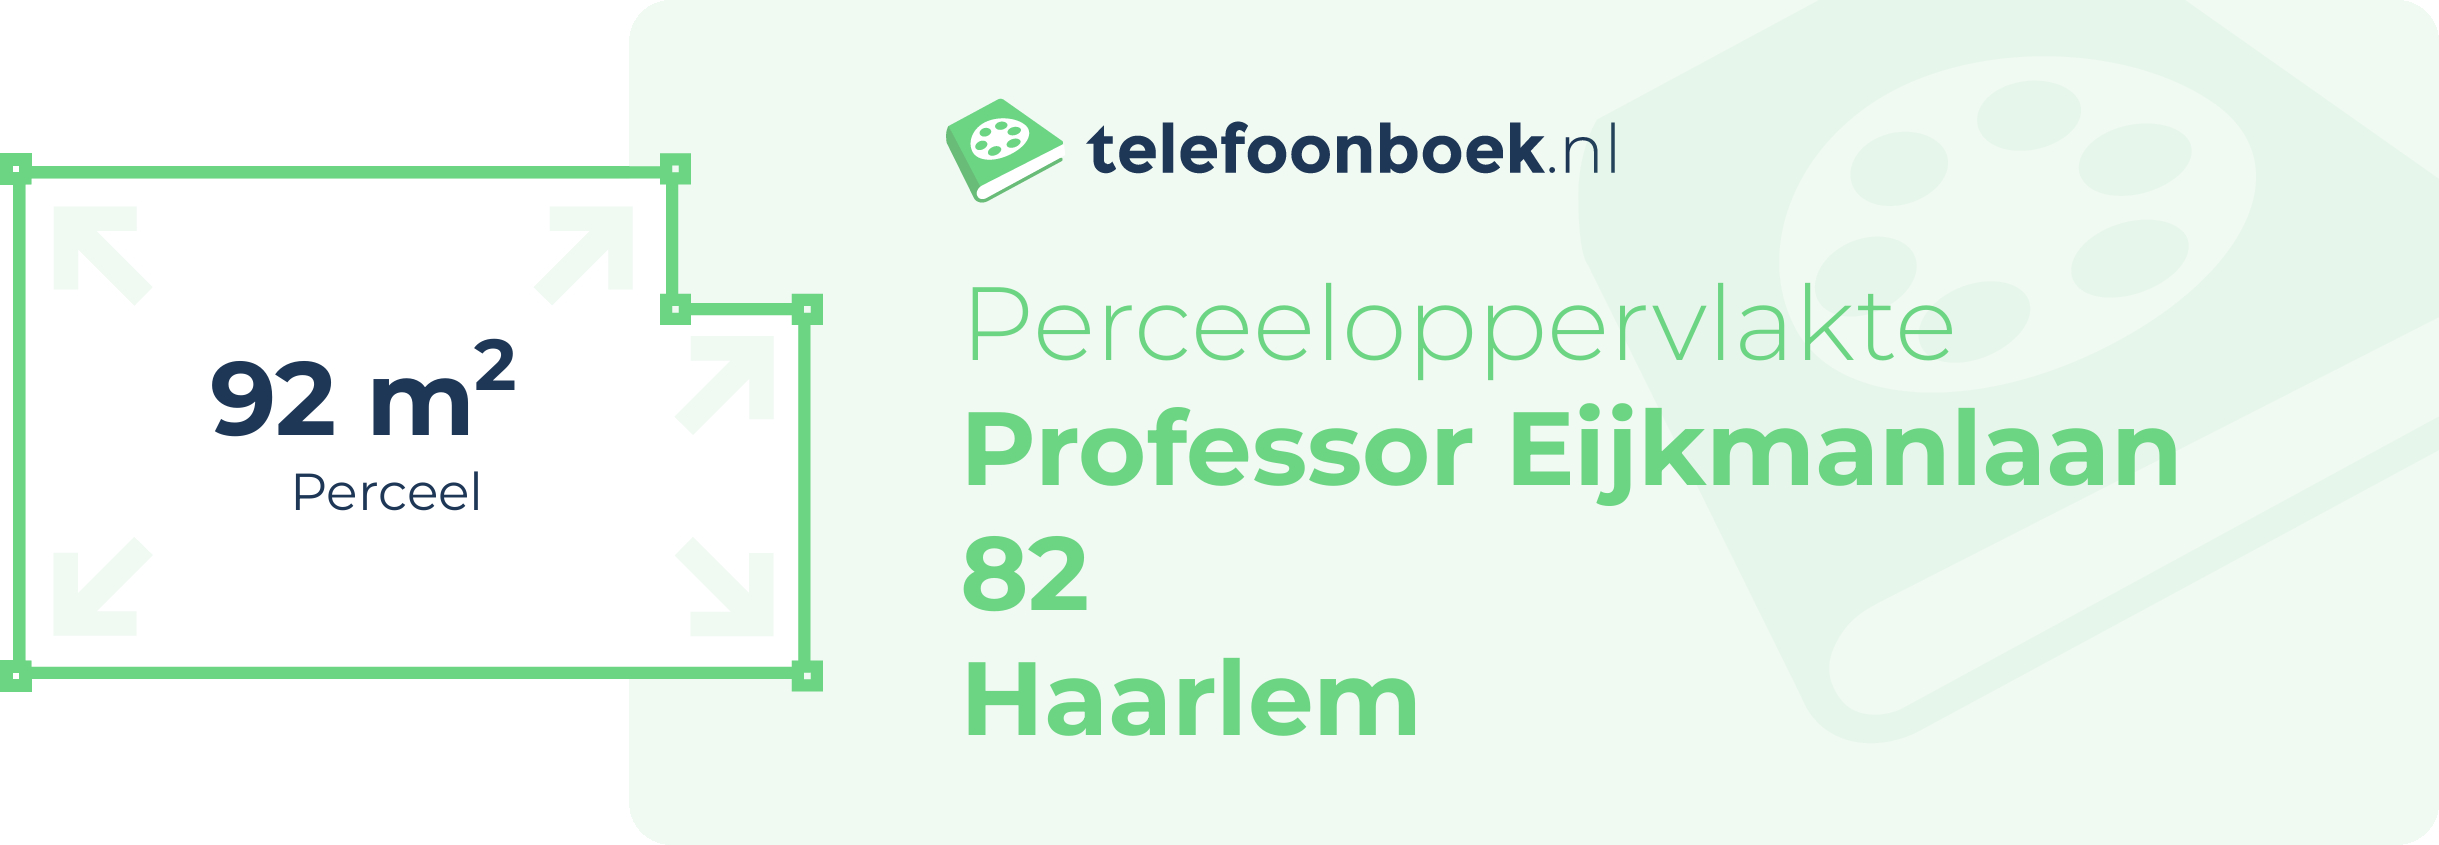 Perceeloppervlakte Professor Eijkmanlaan 82 Haarlem